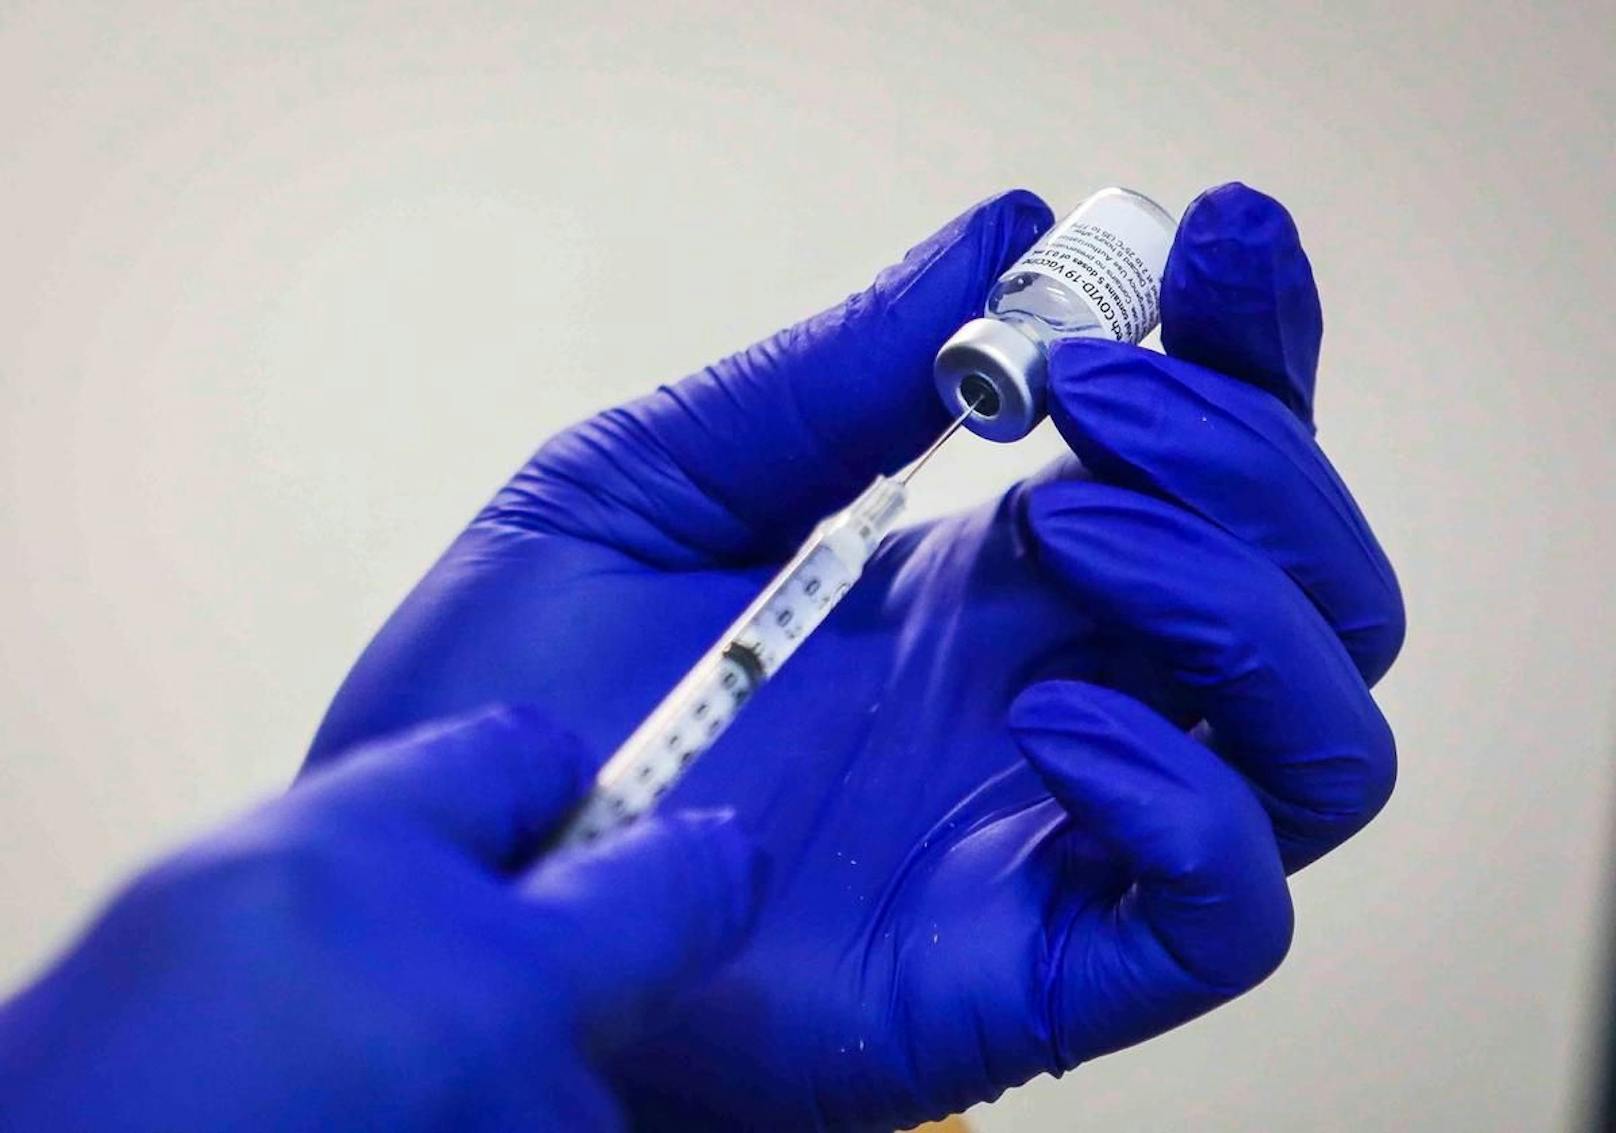 Der von Biontech und Pfizer entwickelte Corona-Impfstoff schützt laut einer neuen Studie auch vor den neu aufgetauchten Varianten des Virus.